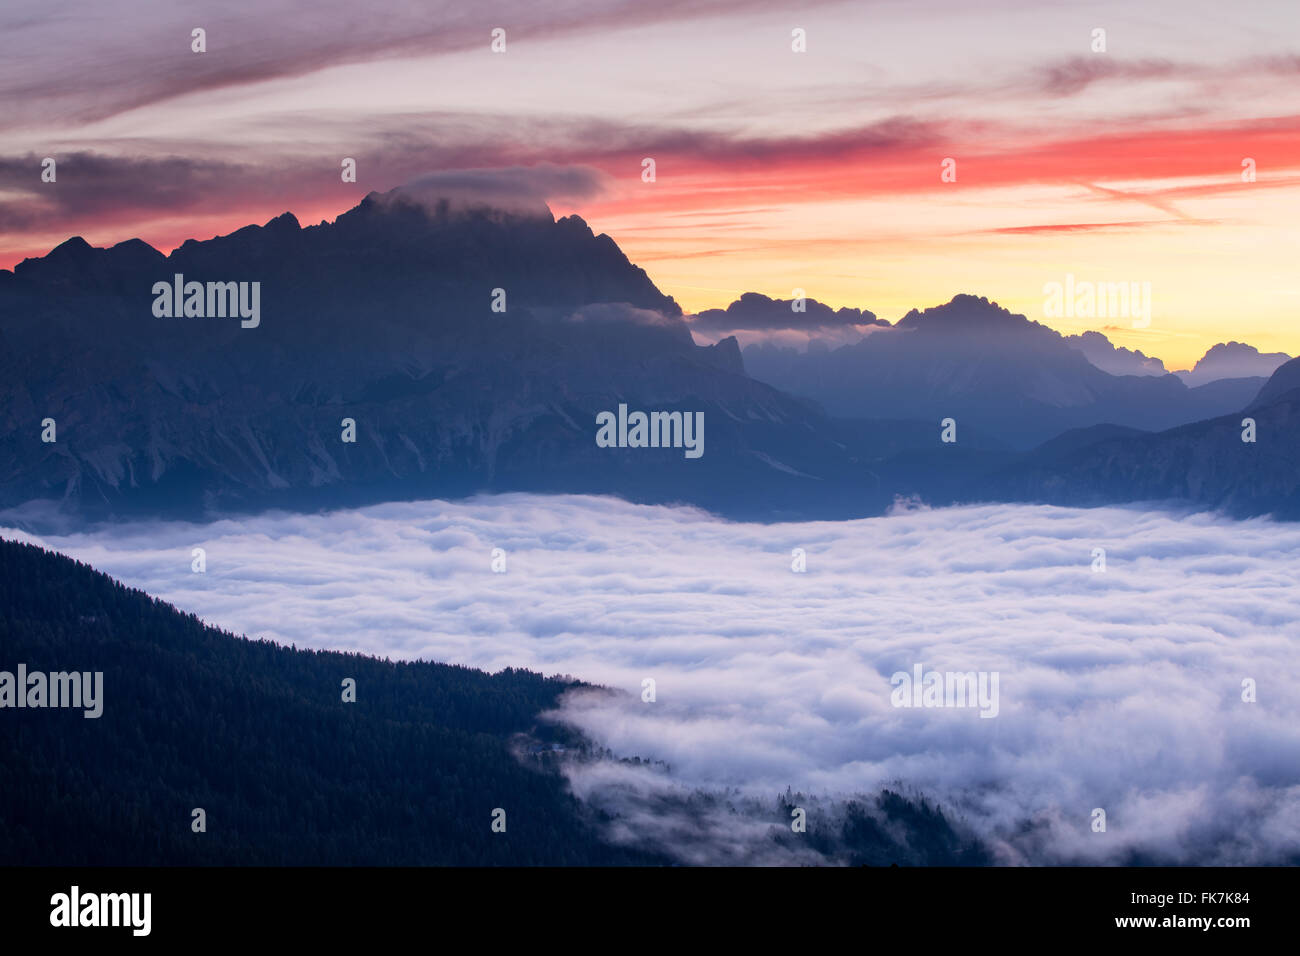 dawn over Monte Cristallo & Cortina d'Ampezzo from Cinque Torri, Dolomite Mountains,  Belluno Province, Veneto, Italy Stock Photo